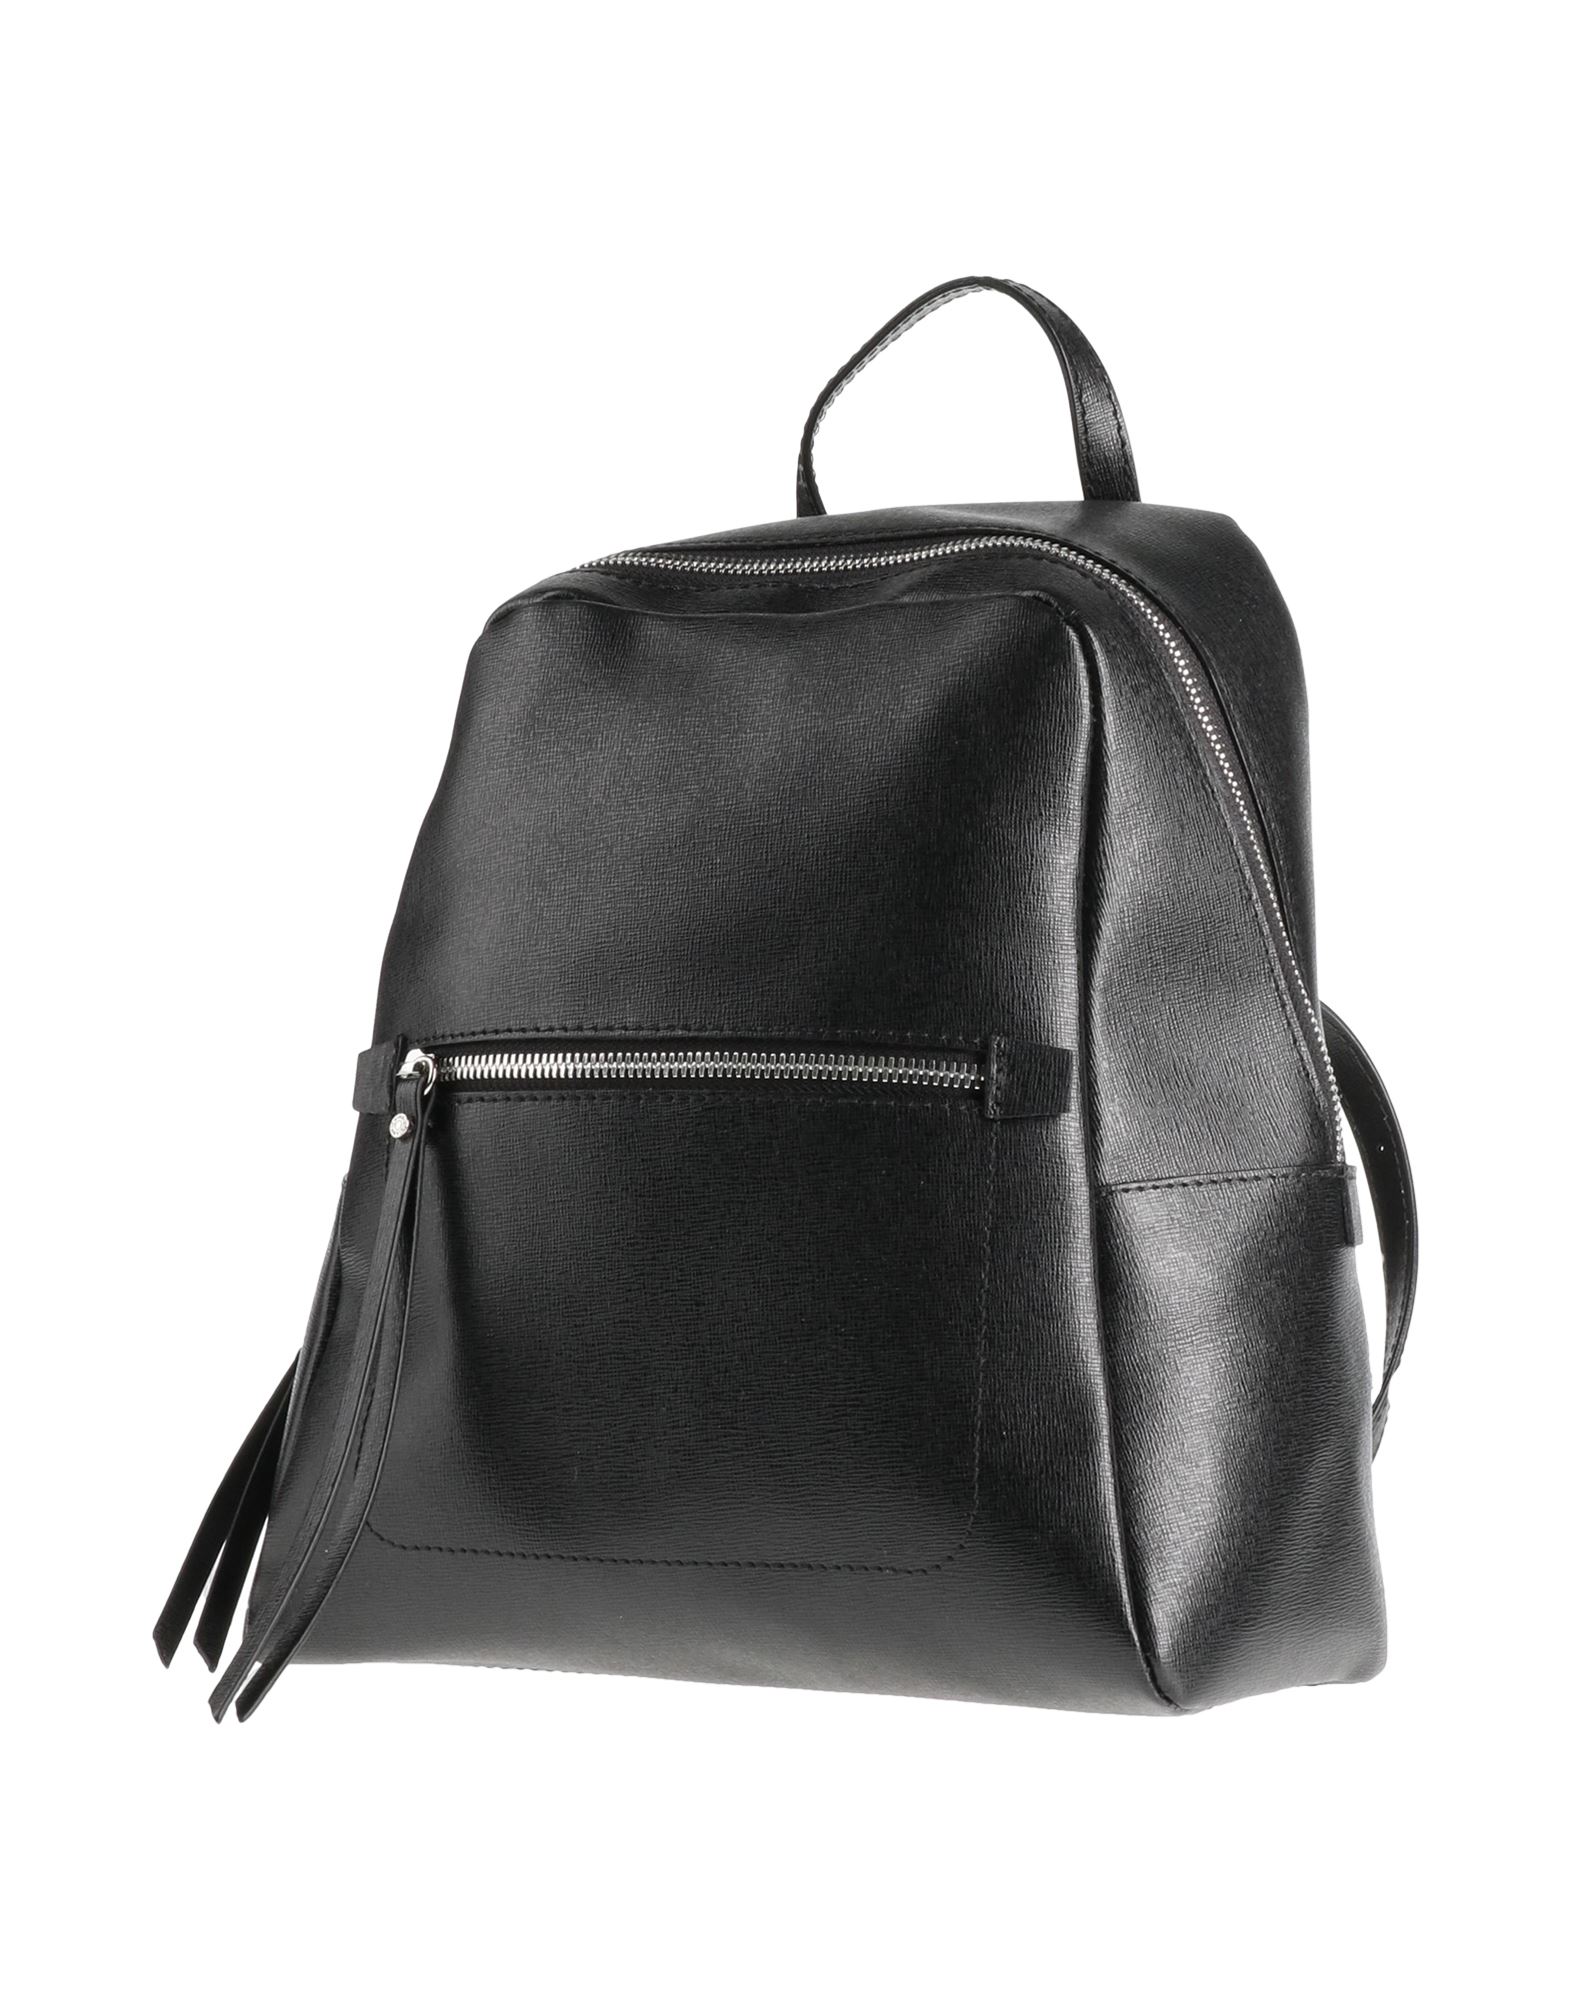 Gianni Chiarini Backpacks In Black